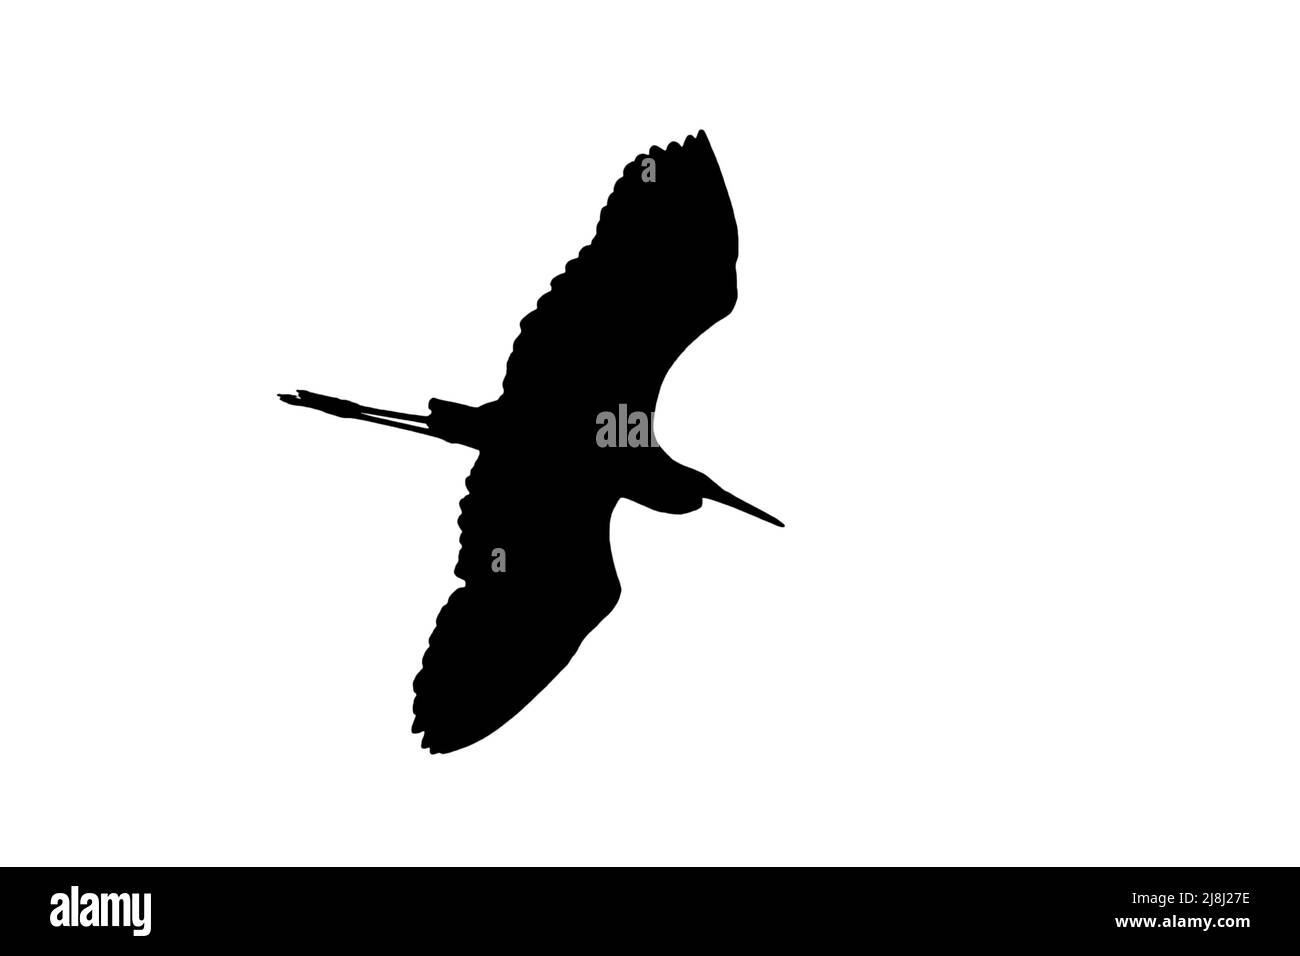 Silhouette von großen weißen Reiher / Reiher (Ardea alba) im Flug vor weißem Hintergrund skizziert, um Flügel, Kopf und Schwanz Formen zeigen Stockfoto